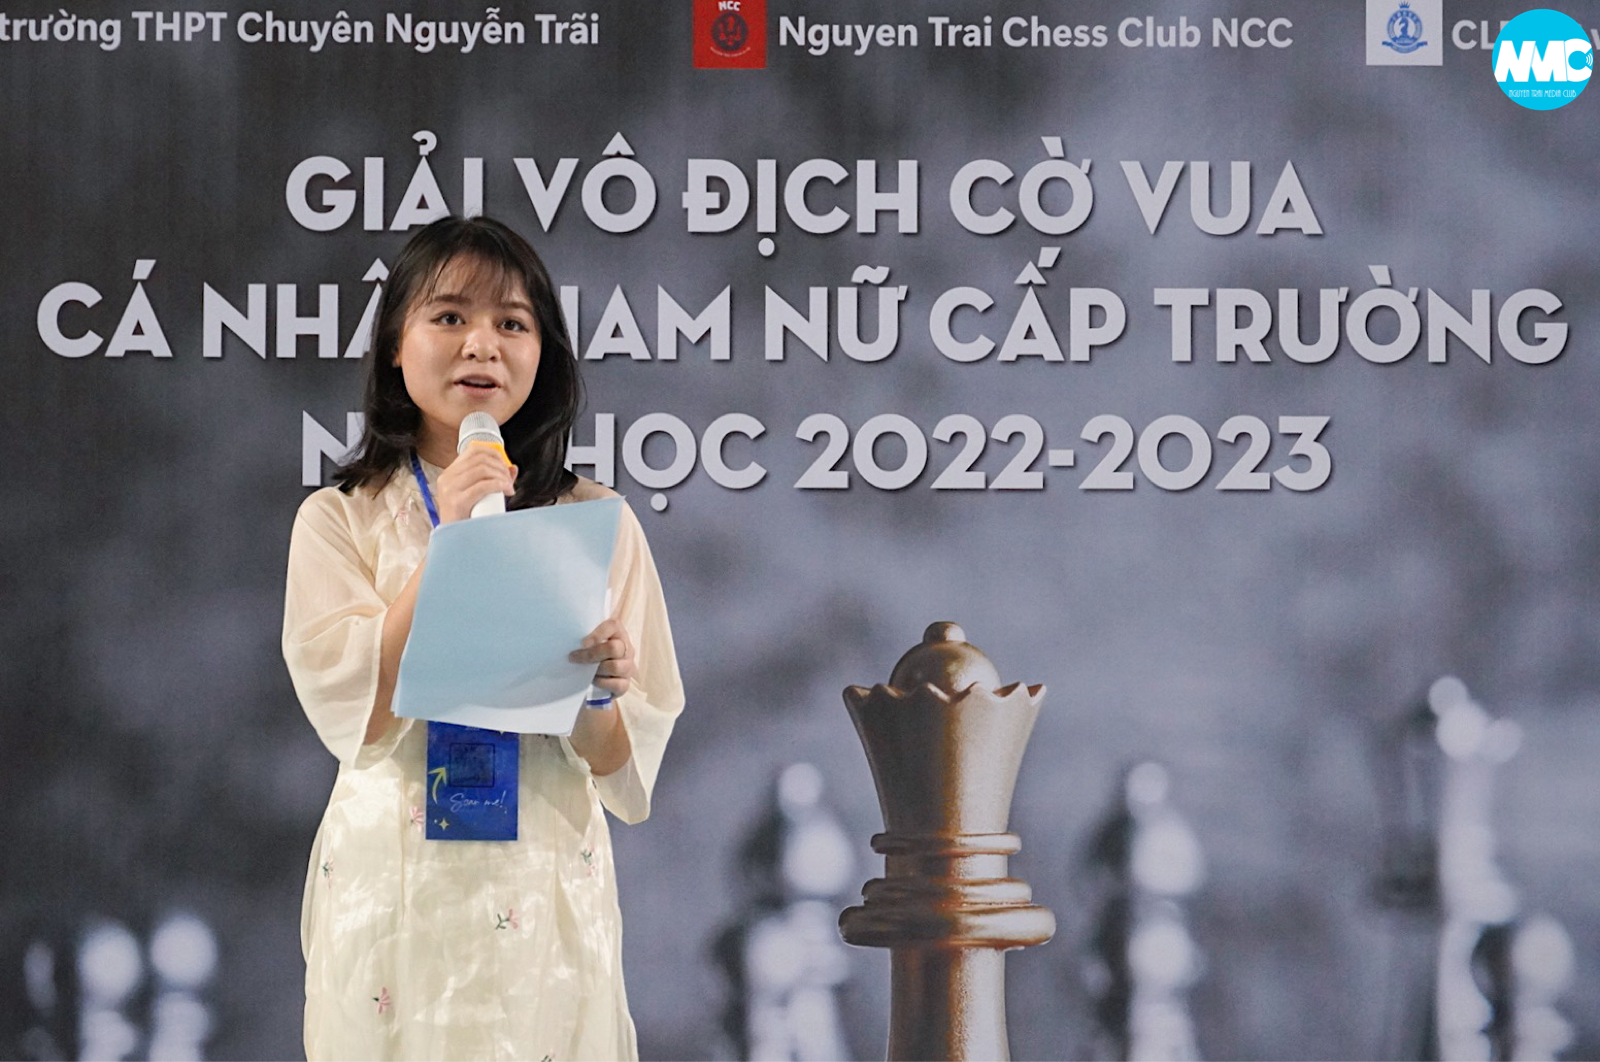 Giải Vô địch cờ vua cá nhân cấp trường lần đầu tiên diễn ra tại trường THPT chuyên Nguyễn Trãi